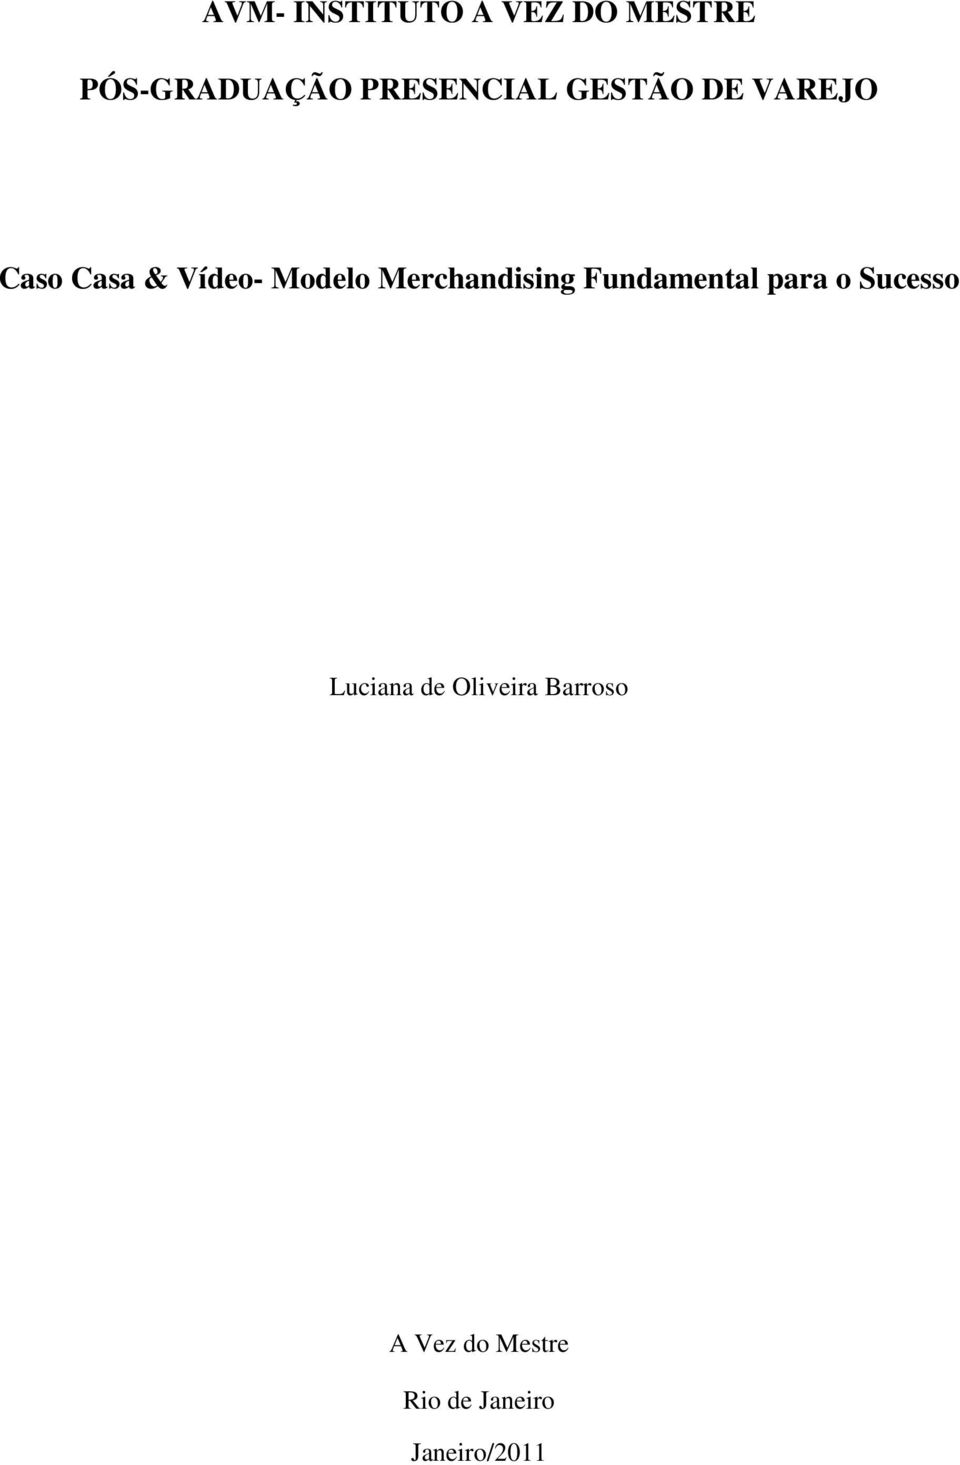 Modelo Merchandising Fundamental para o Sucesso